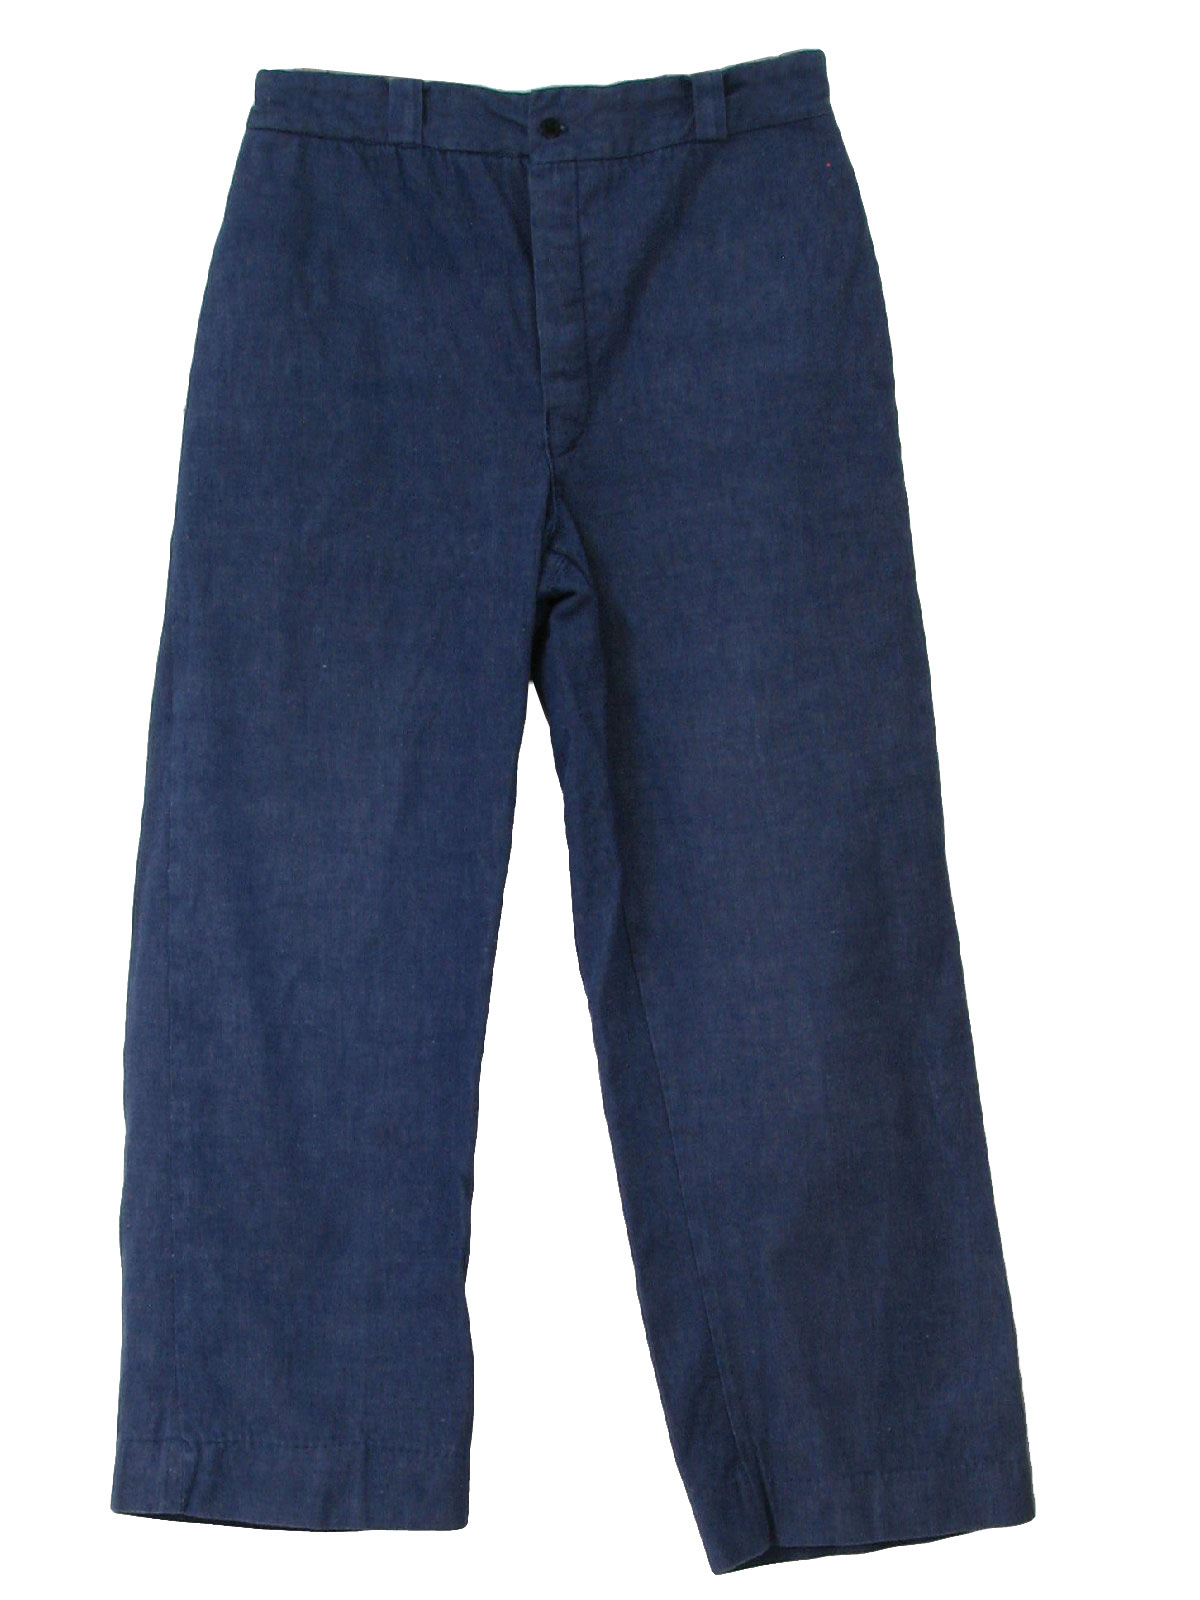 70s Vintage Pants: 70s - no label- Mens medium blue cotton denim wide ...